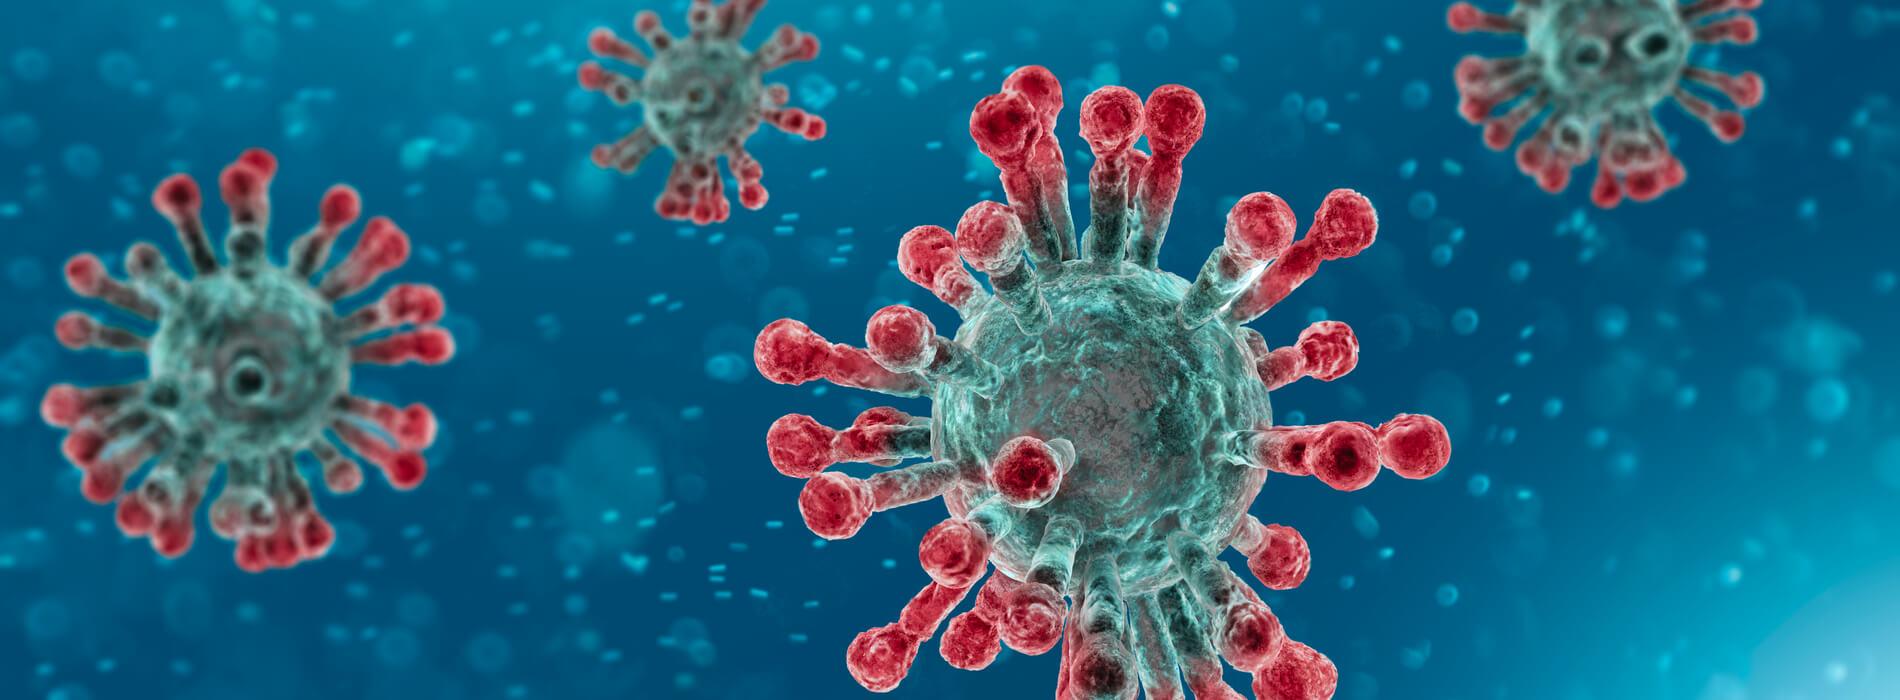 Badanie przeciwciał neutralizujących anty-S - sposób na ocenę poziomu odporności na zakażenie koronawirusem SARS-CoV-2